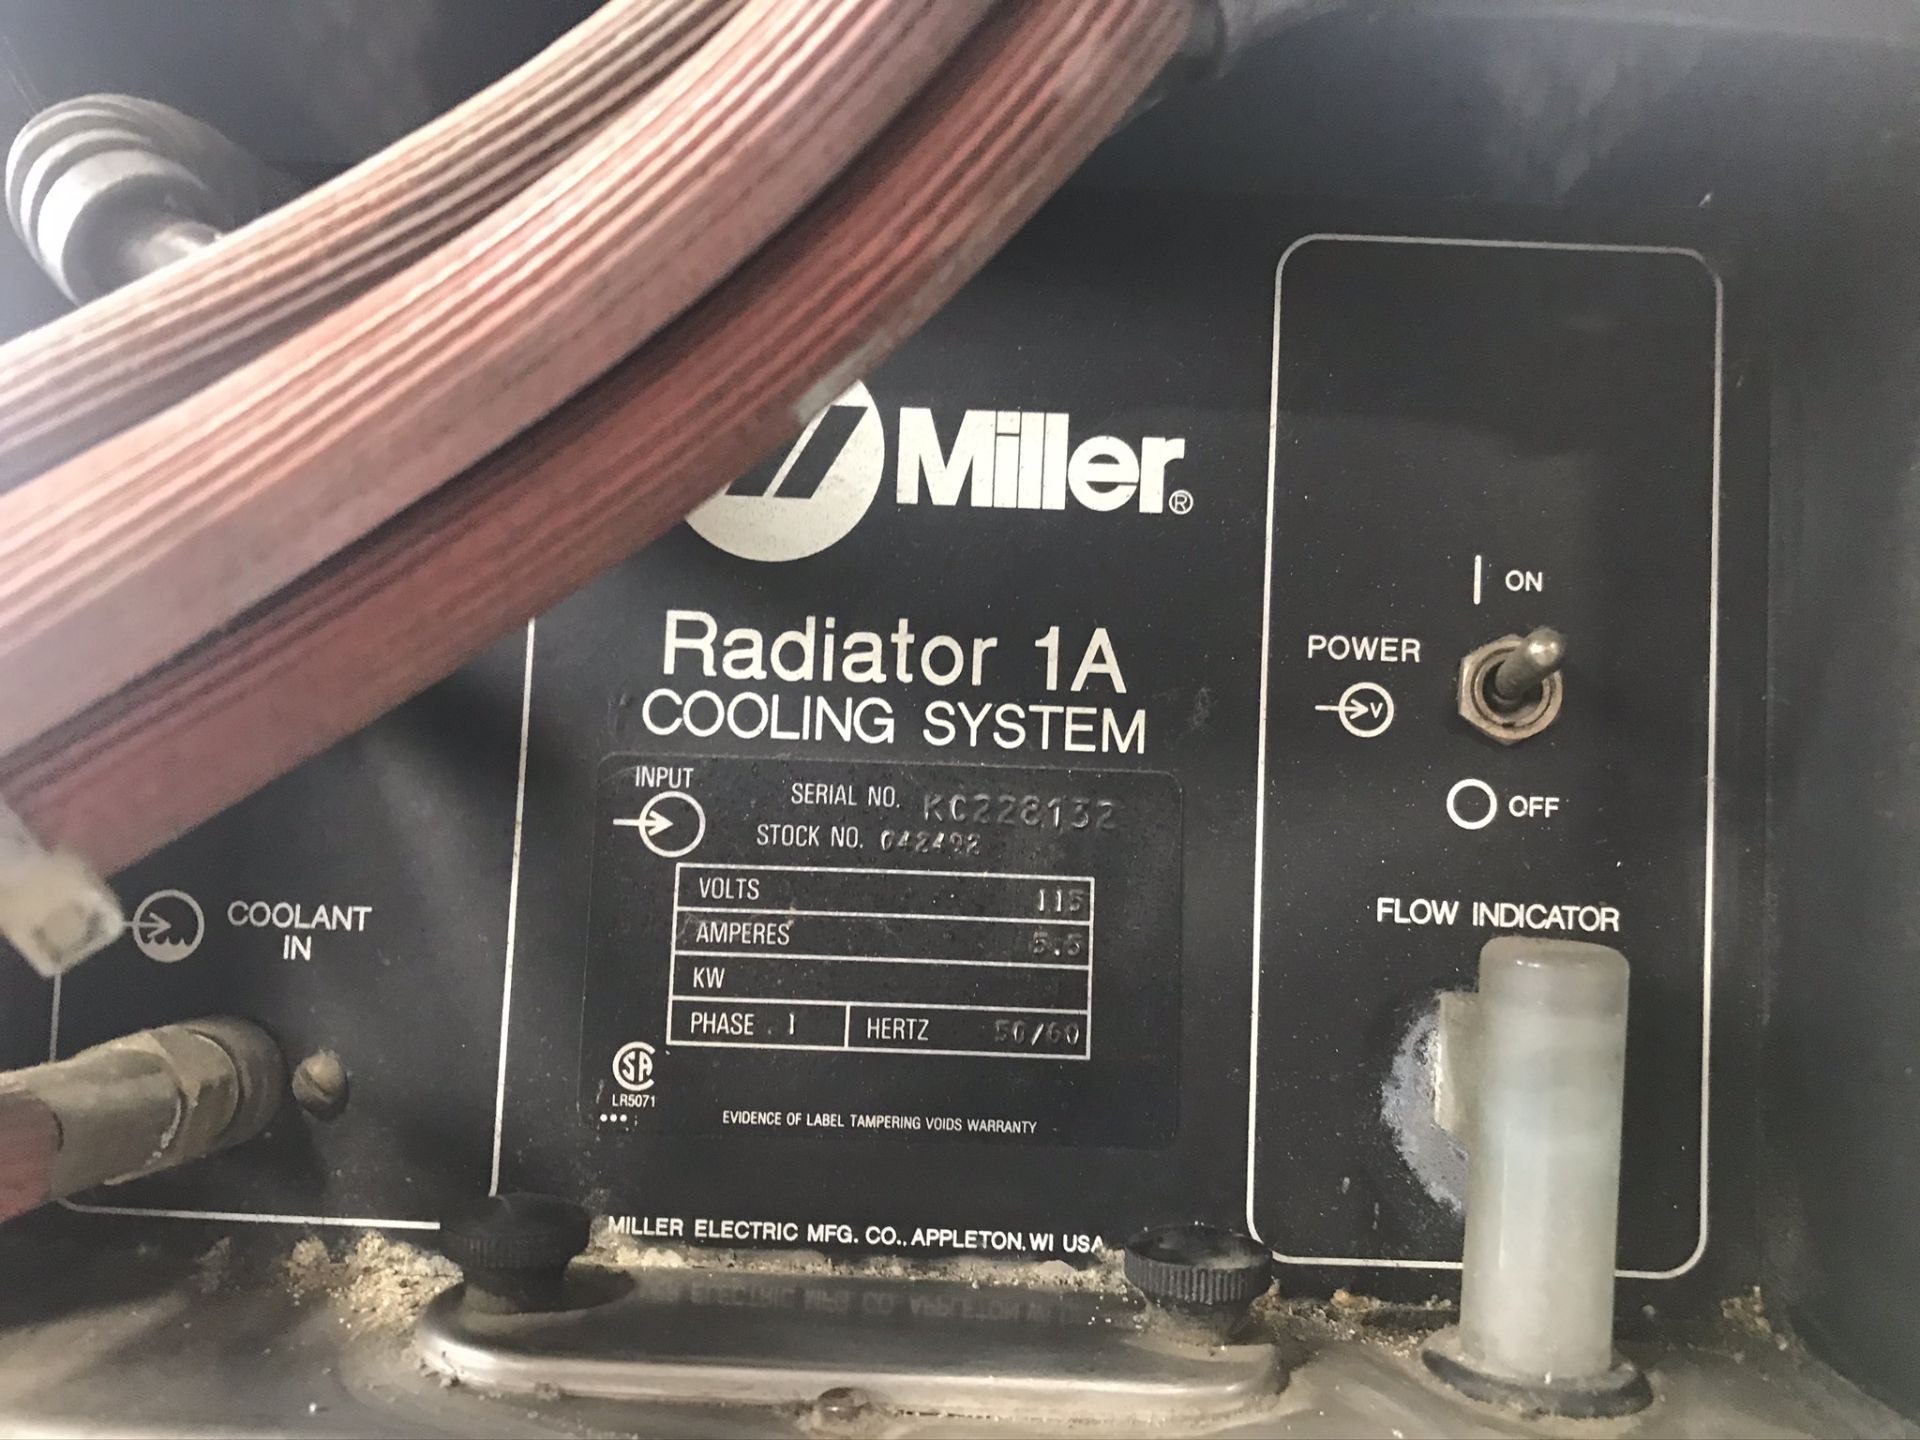 Miller Syncrowave 300 Welder w/ Miller Radiator 1A Cooling System - Image 3 of 4